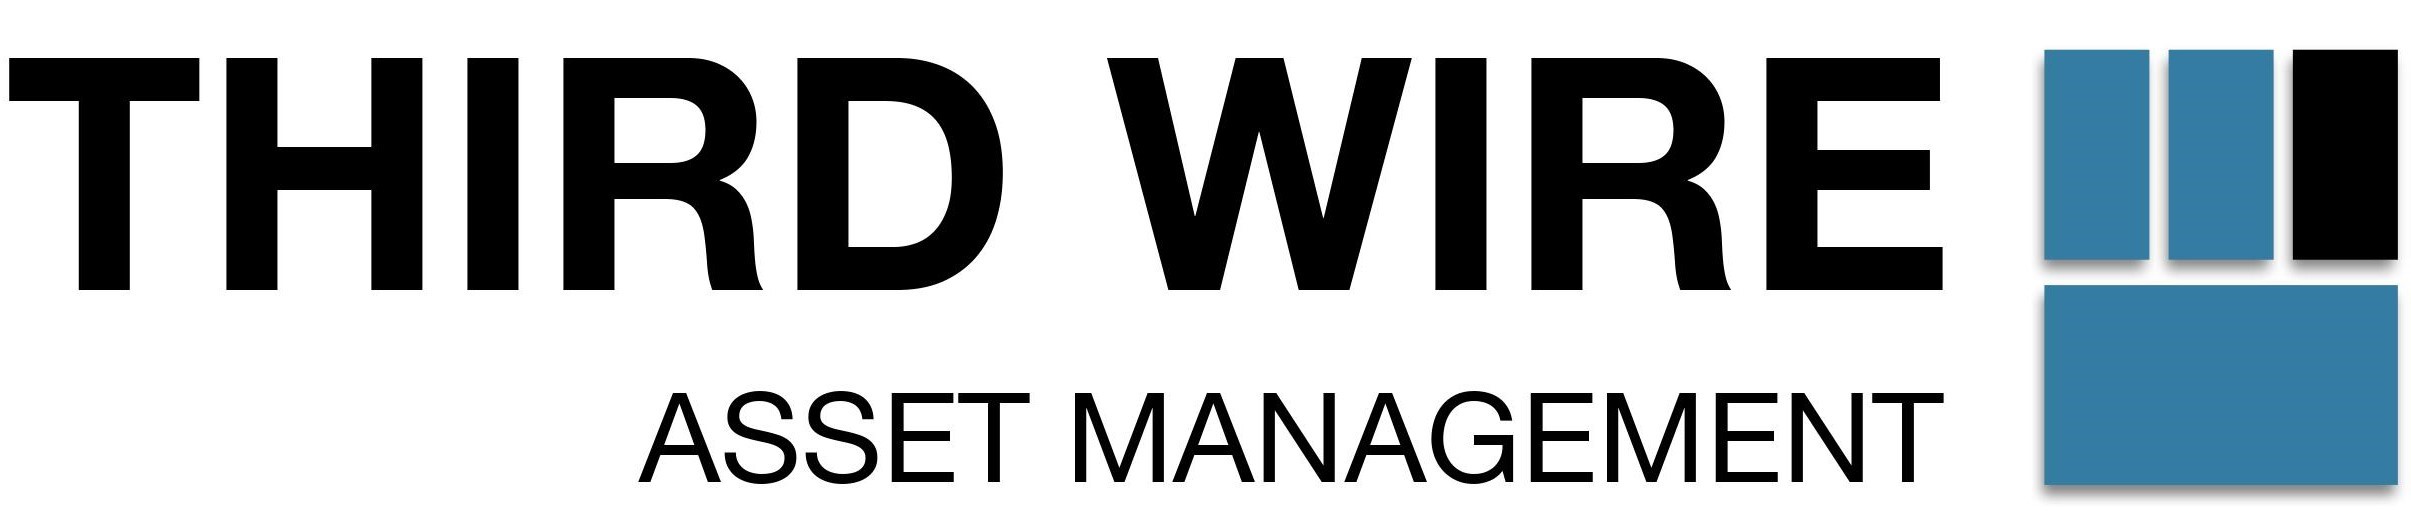 Third Wire Asset Management